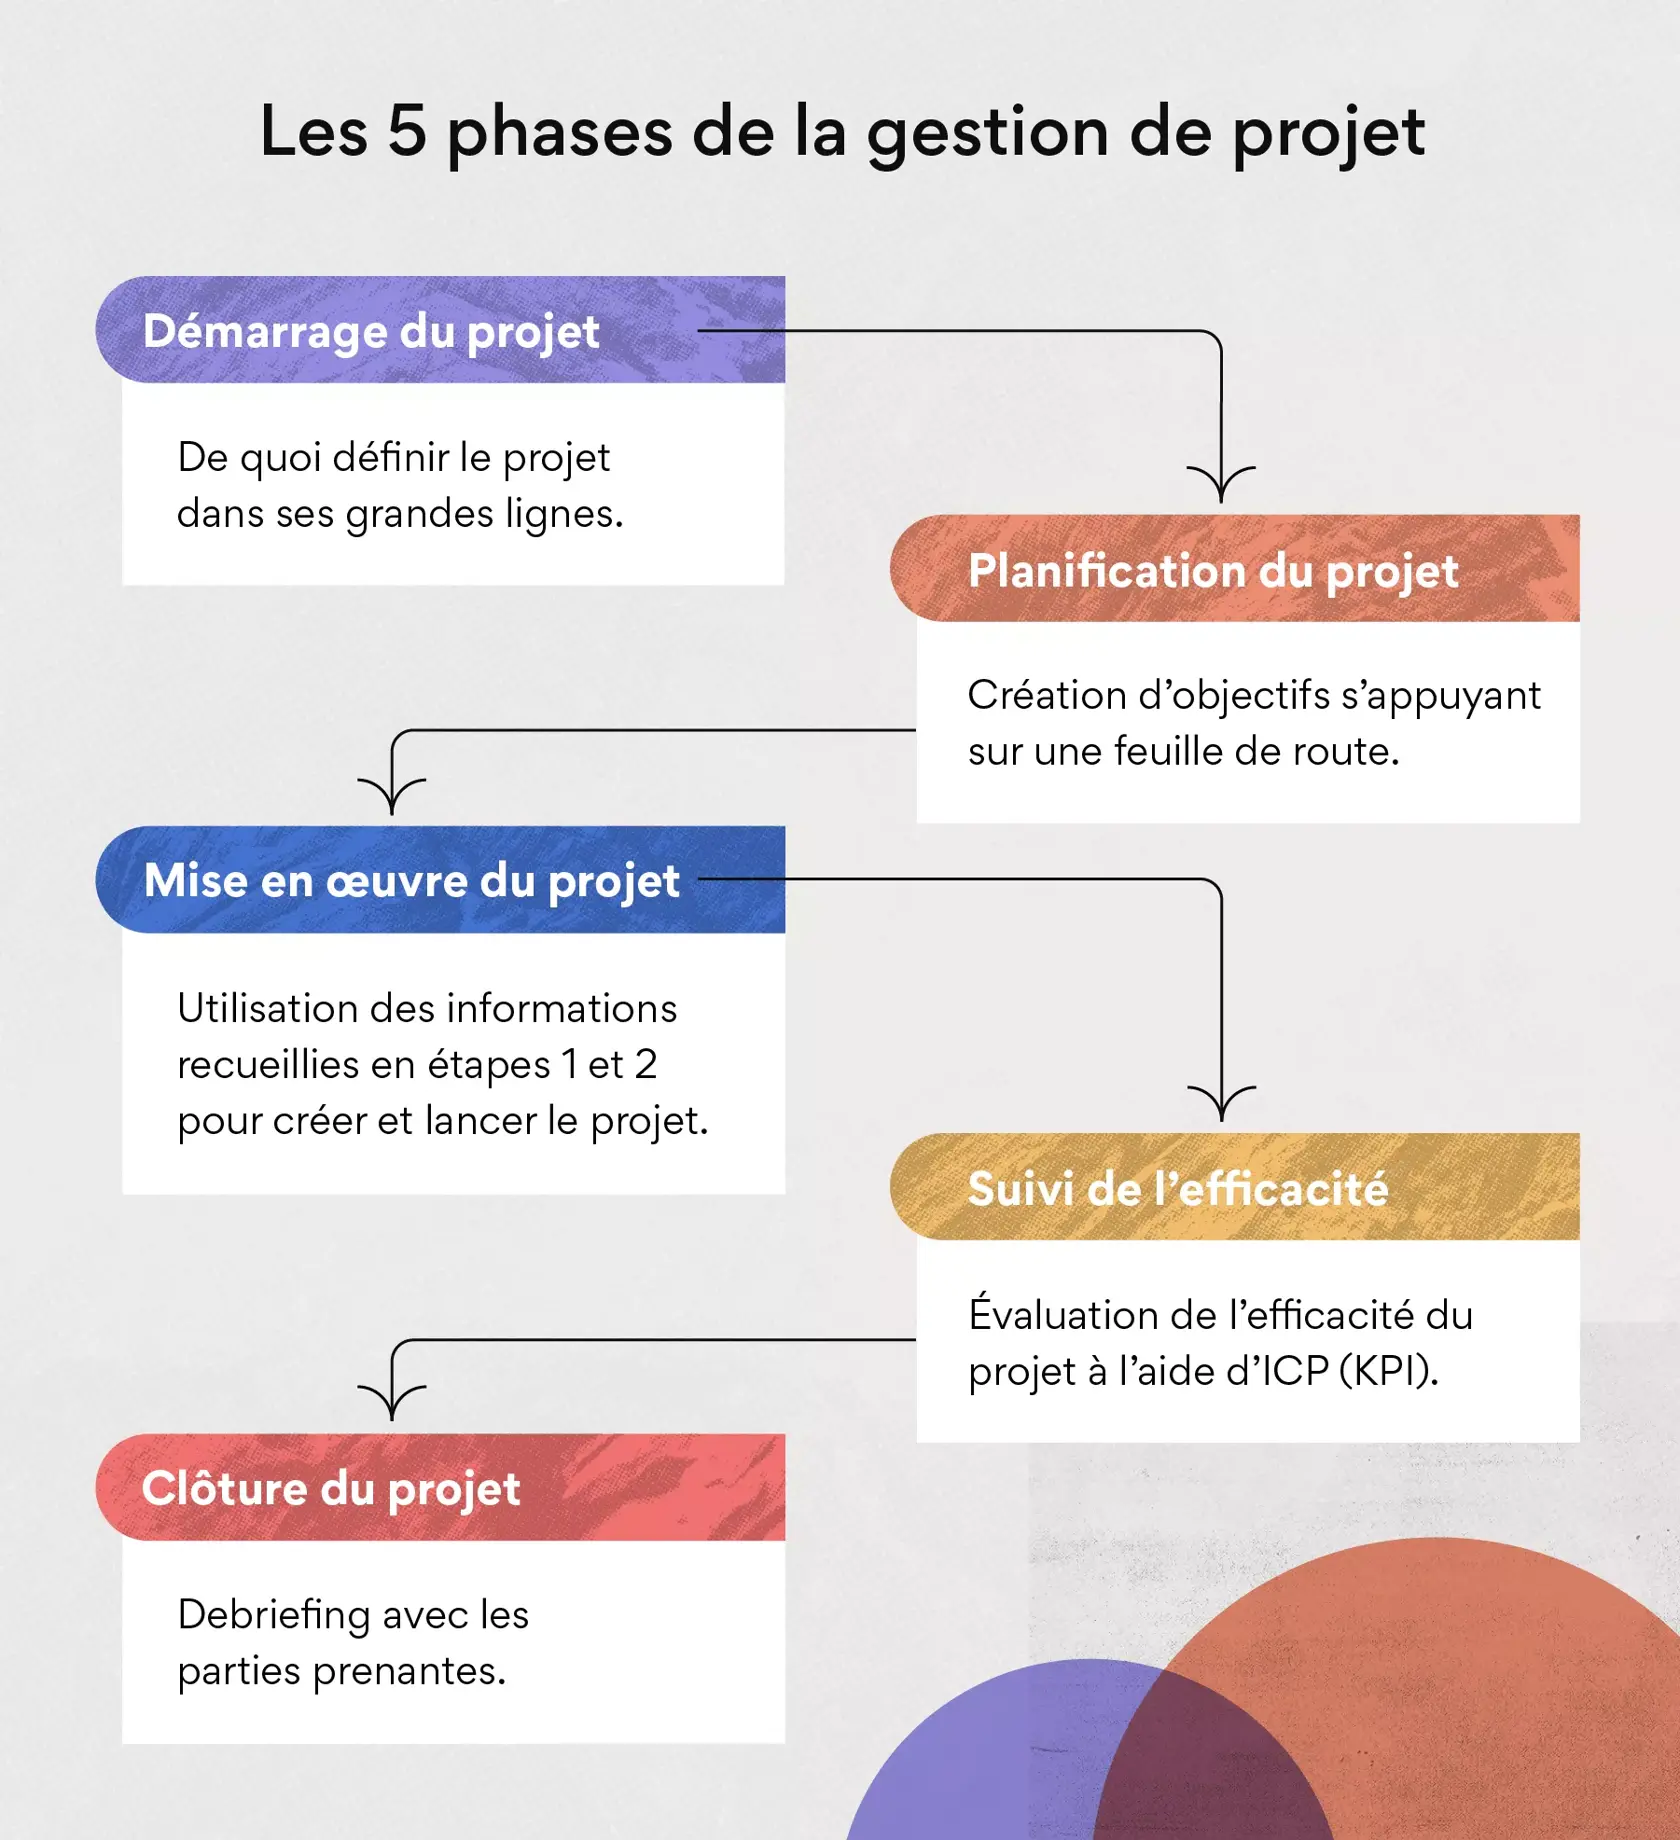 Les 5 phases de la gestion de projet